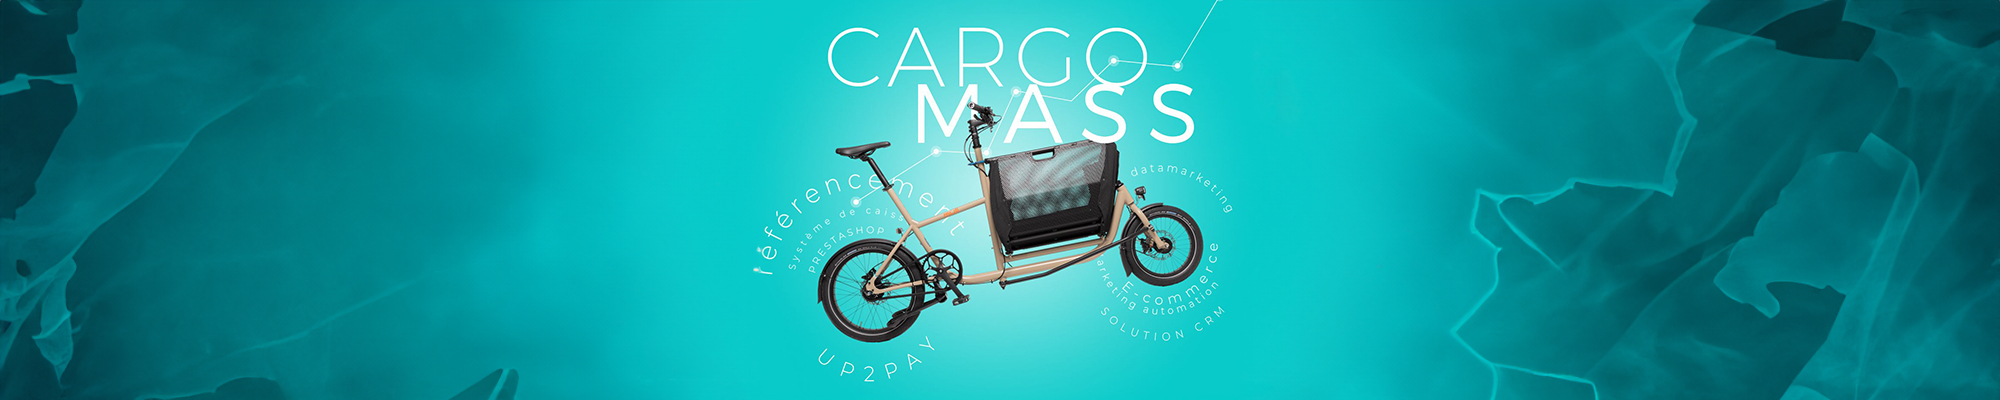 Cargo Mass